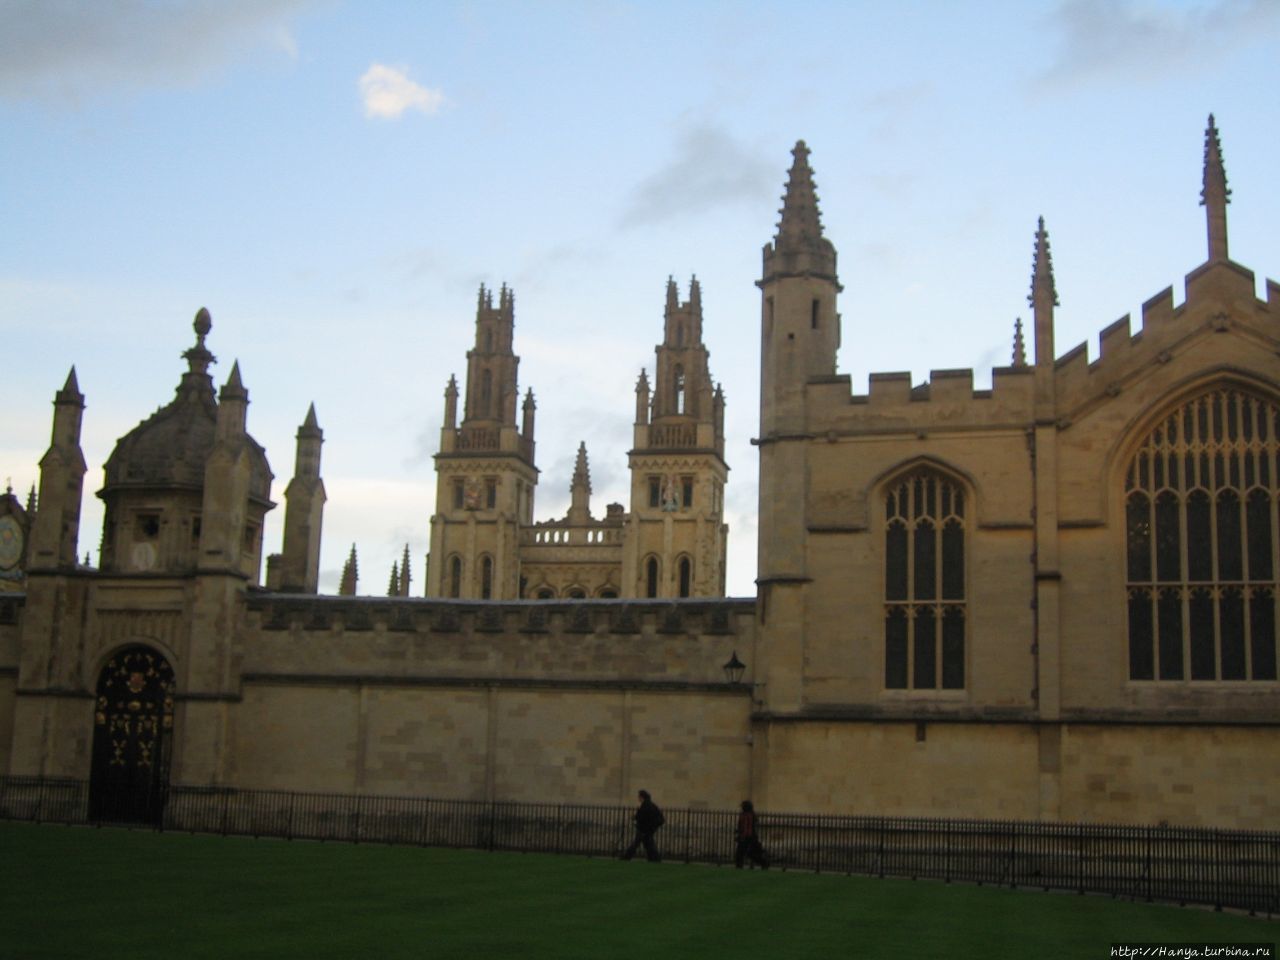 Ол-Соулз-Колледжа (Колледж Всех Душ) / All Souls College, Oxford